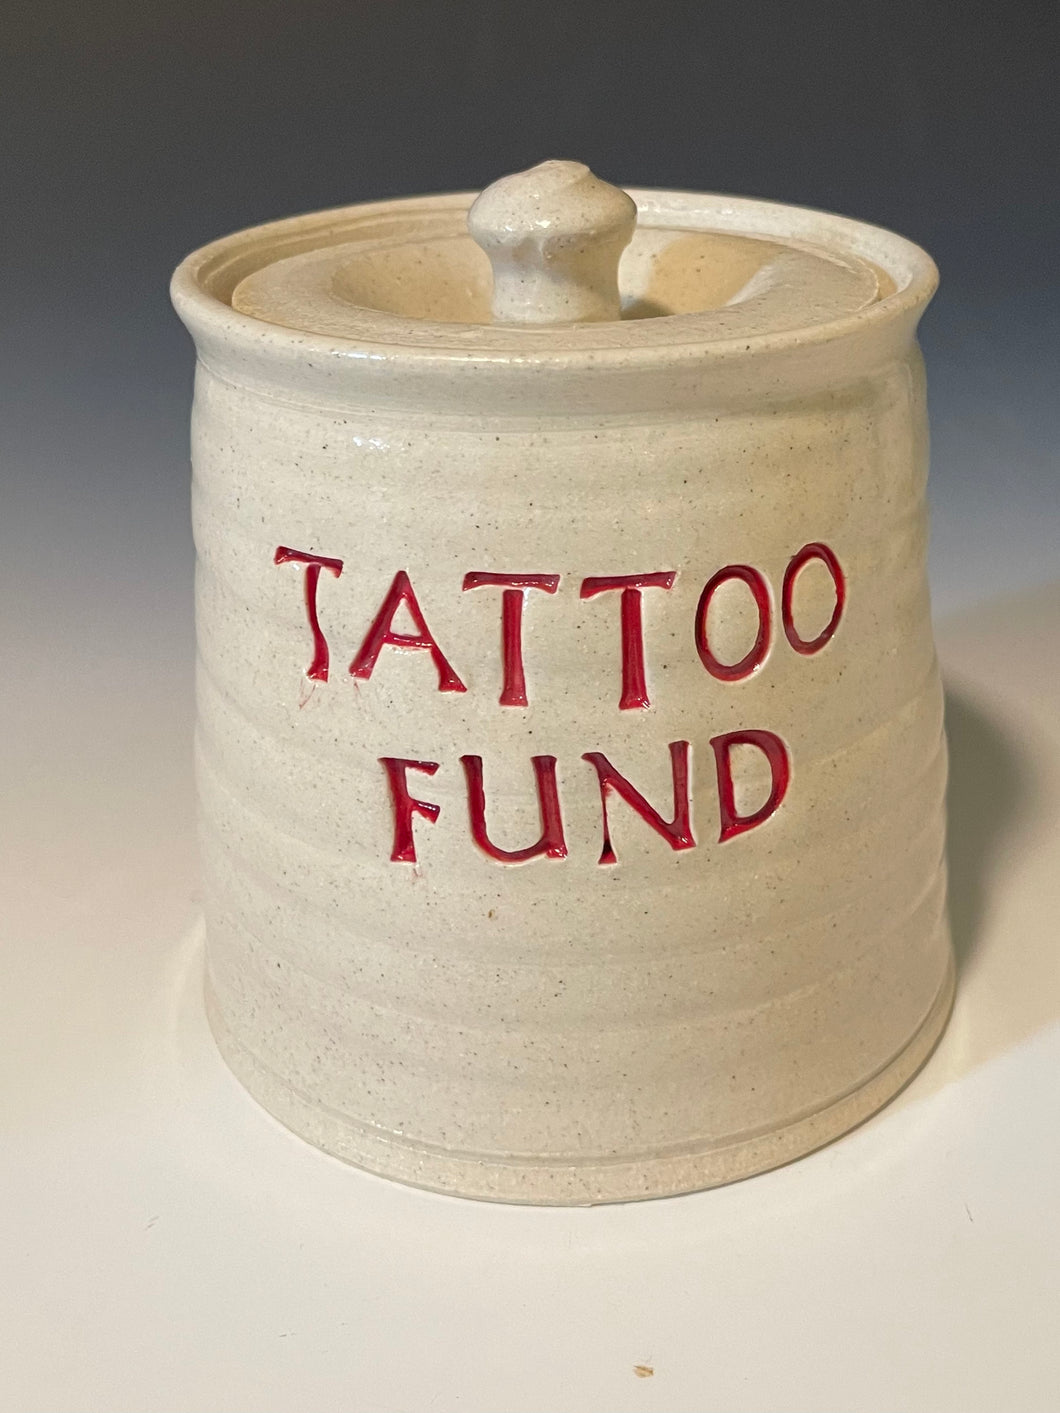 Tattoo Fund Jar